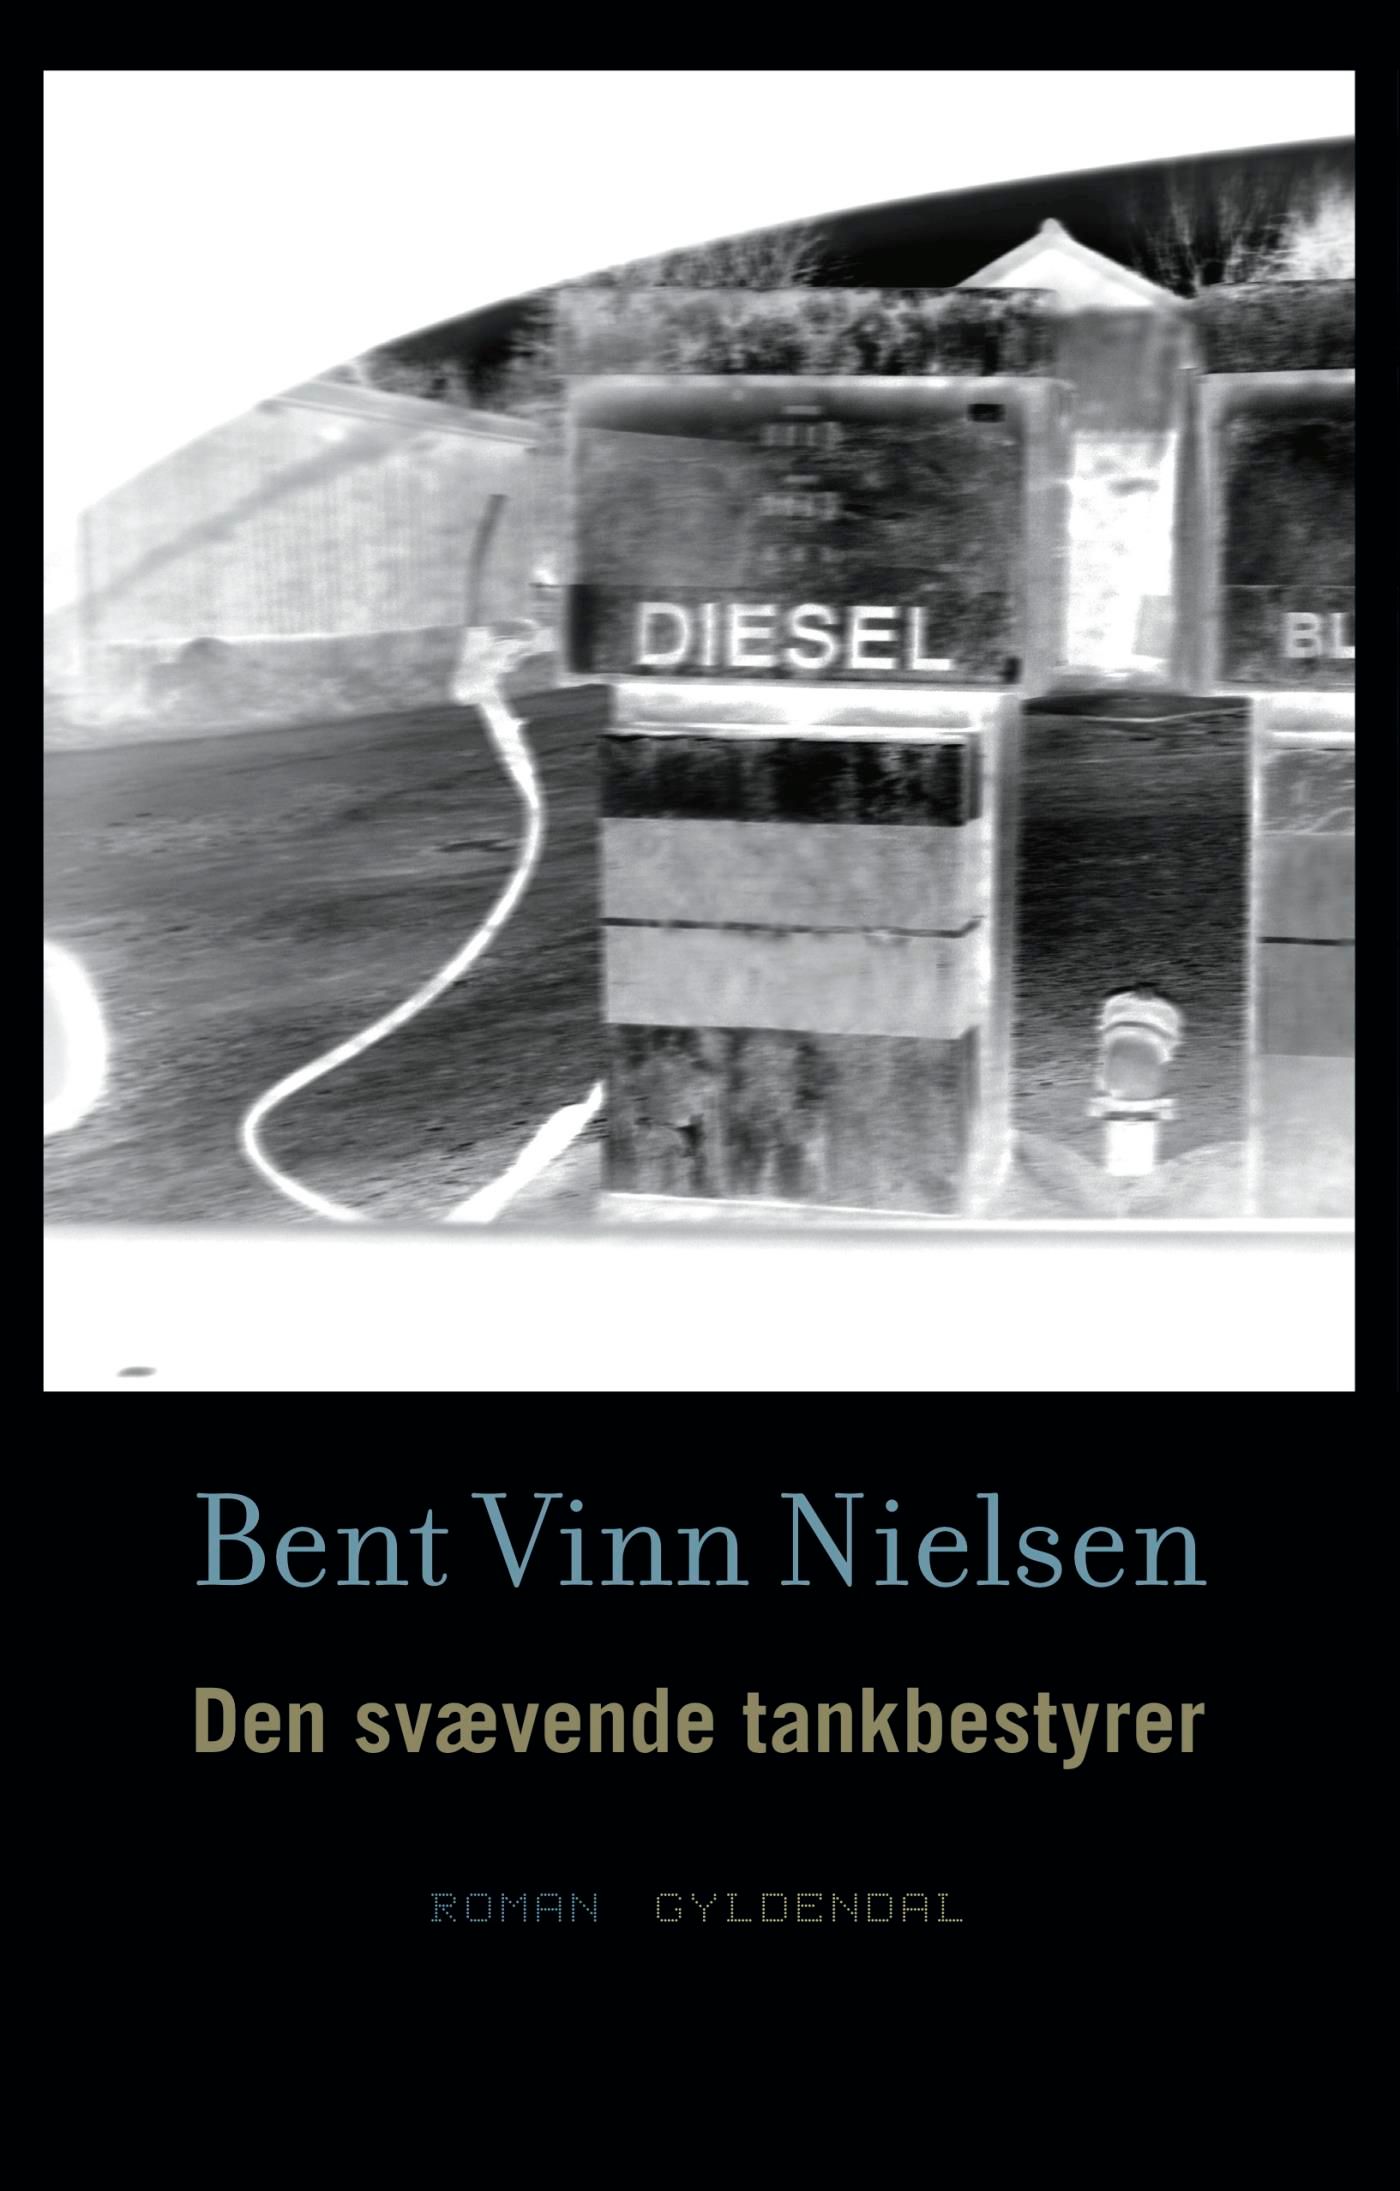 Den svævende tankbestyrer, eBook by Bent Vinn Nielsen